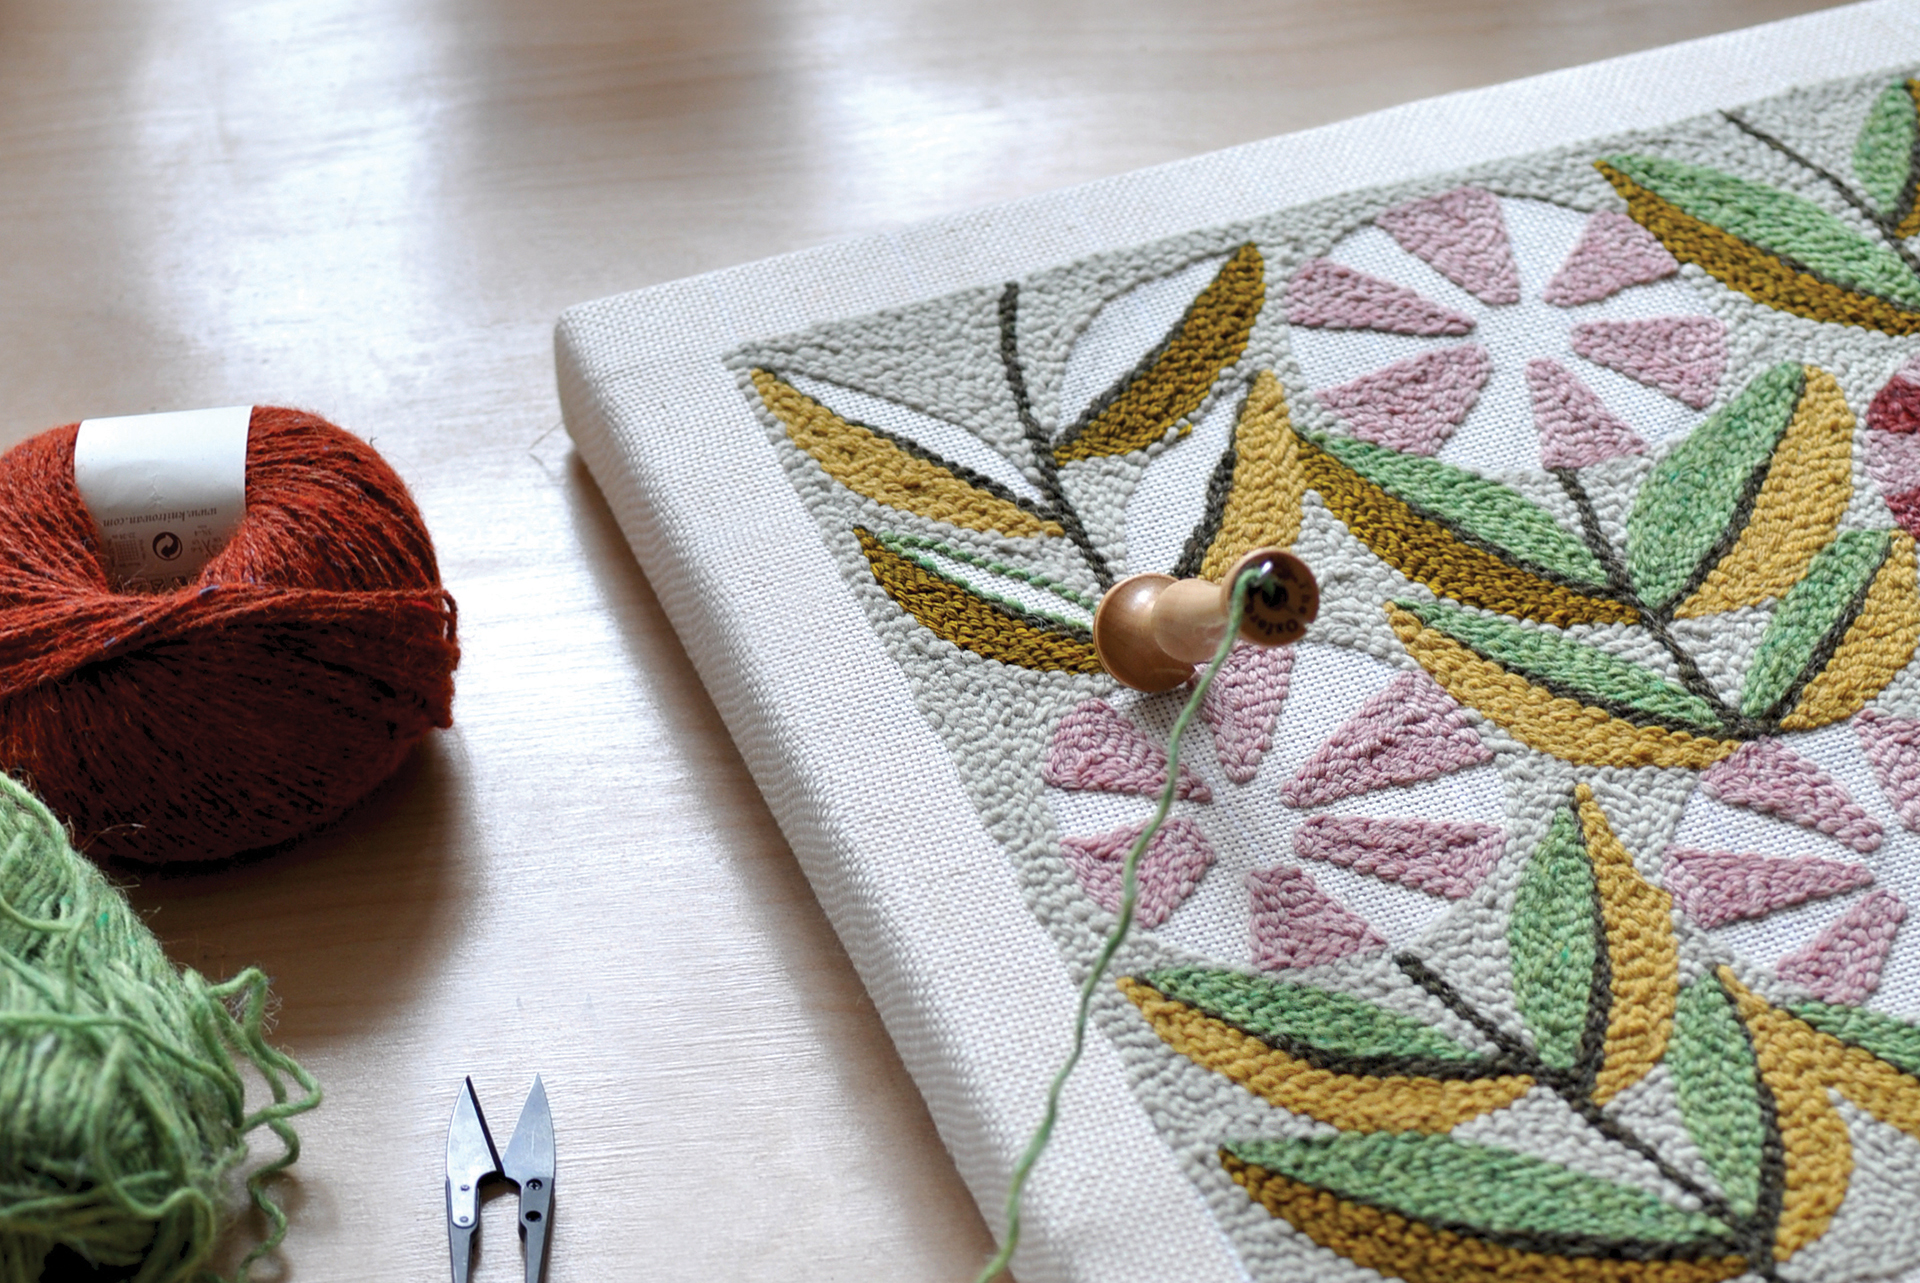 Floral Punch Needle Kit Landscape Rug Yarn Hooking Beginner Kit